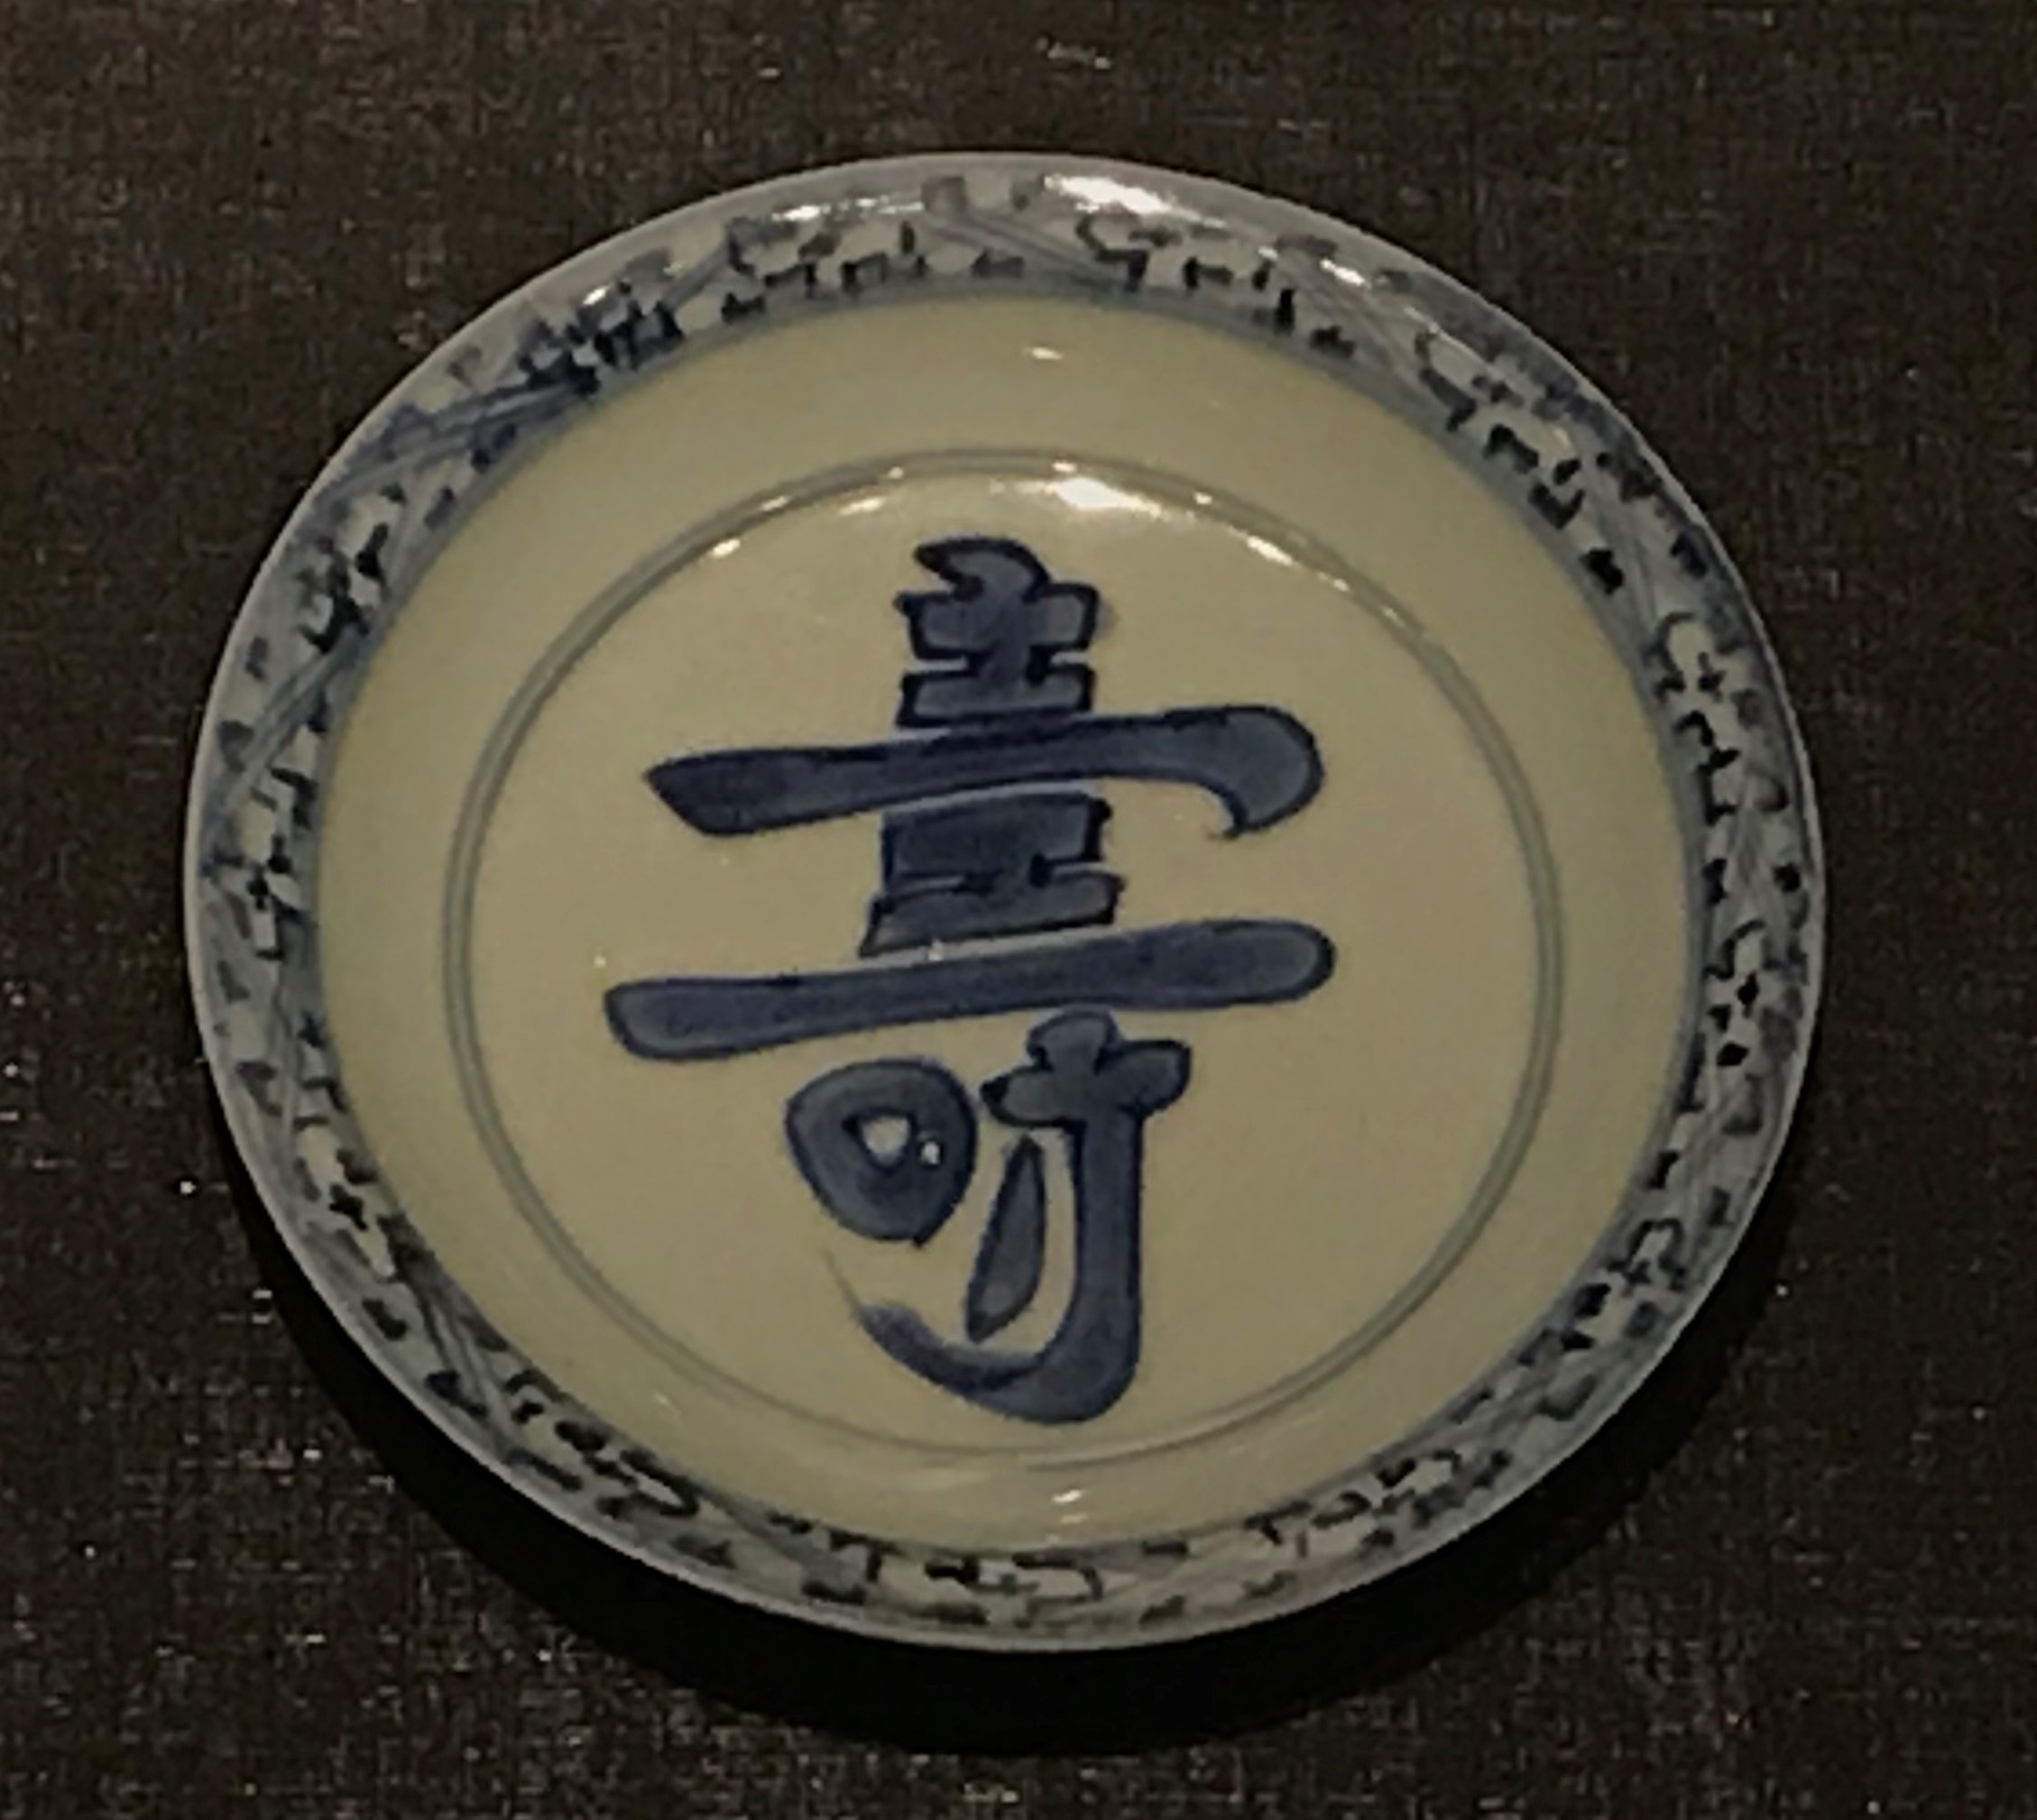 青花寿字紋磁盤-明清時代-常設展F３-成都博物館